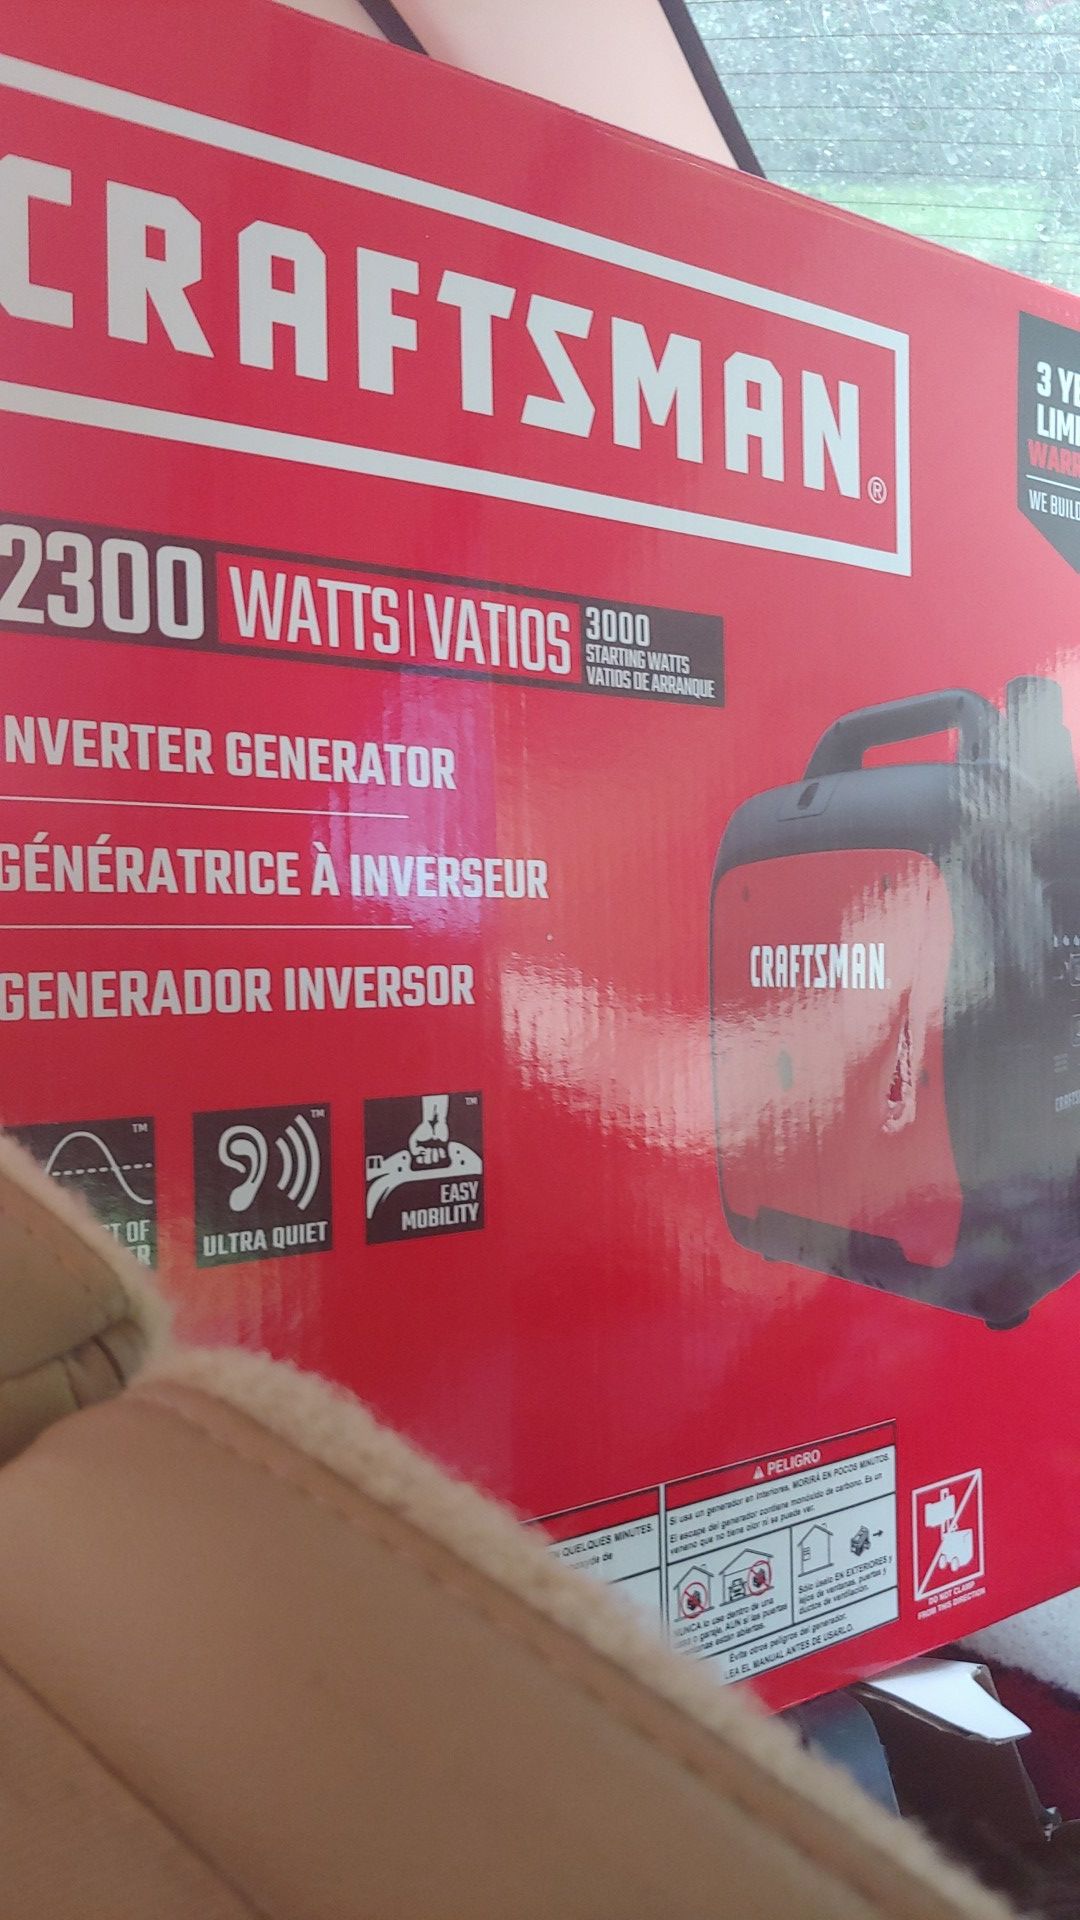 Craftsman 2300 watt 3000 watt Max inverter generator